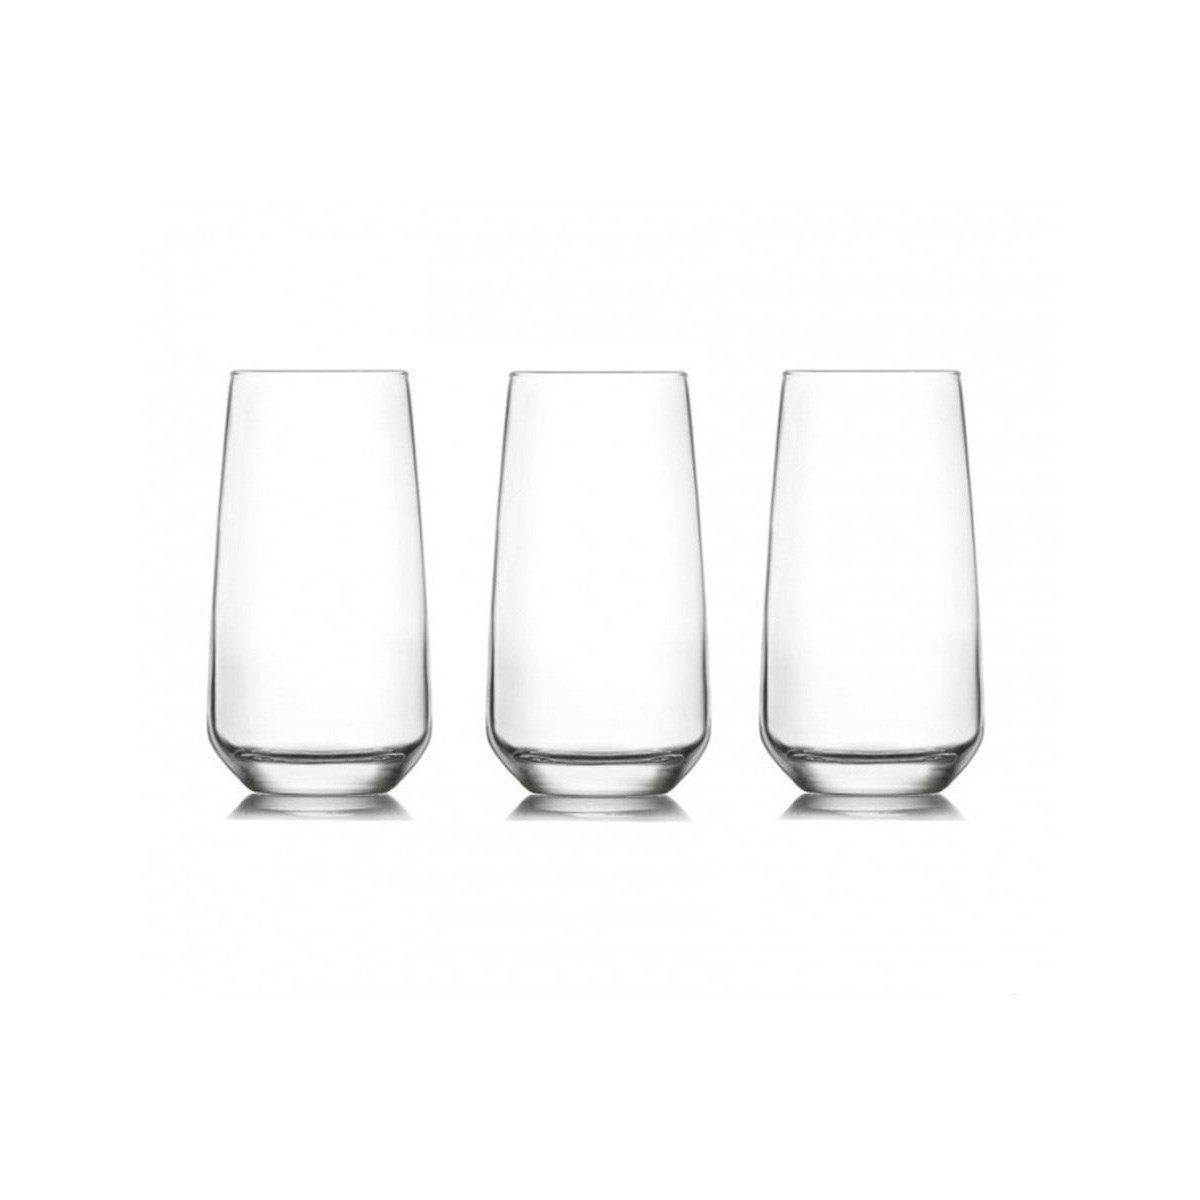 Pasabahce Glas LAL376, Glas, 6 teilig, Gläser-Set spülmaschinenfest, Cocktails oder Limonade